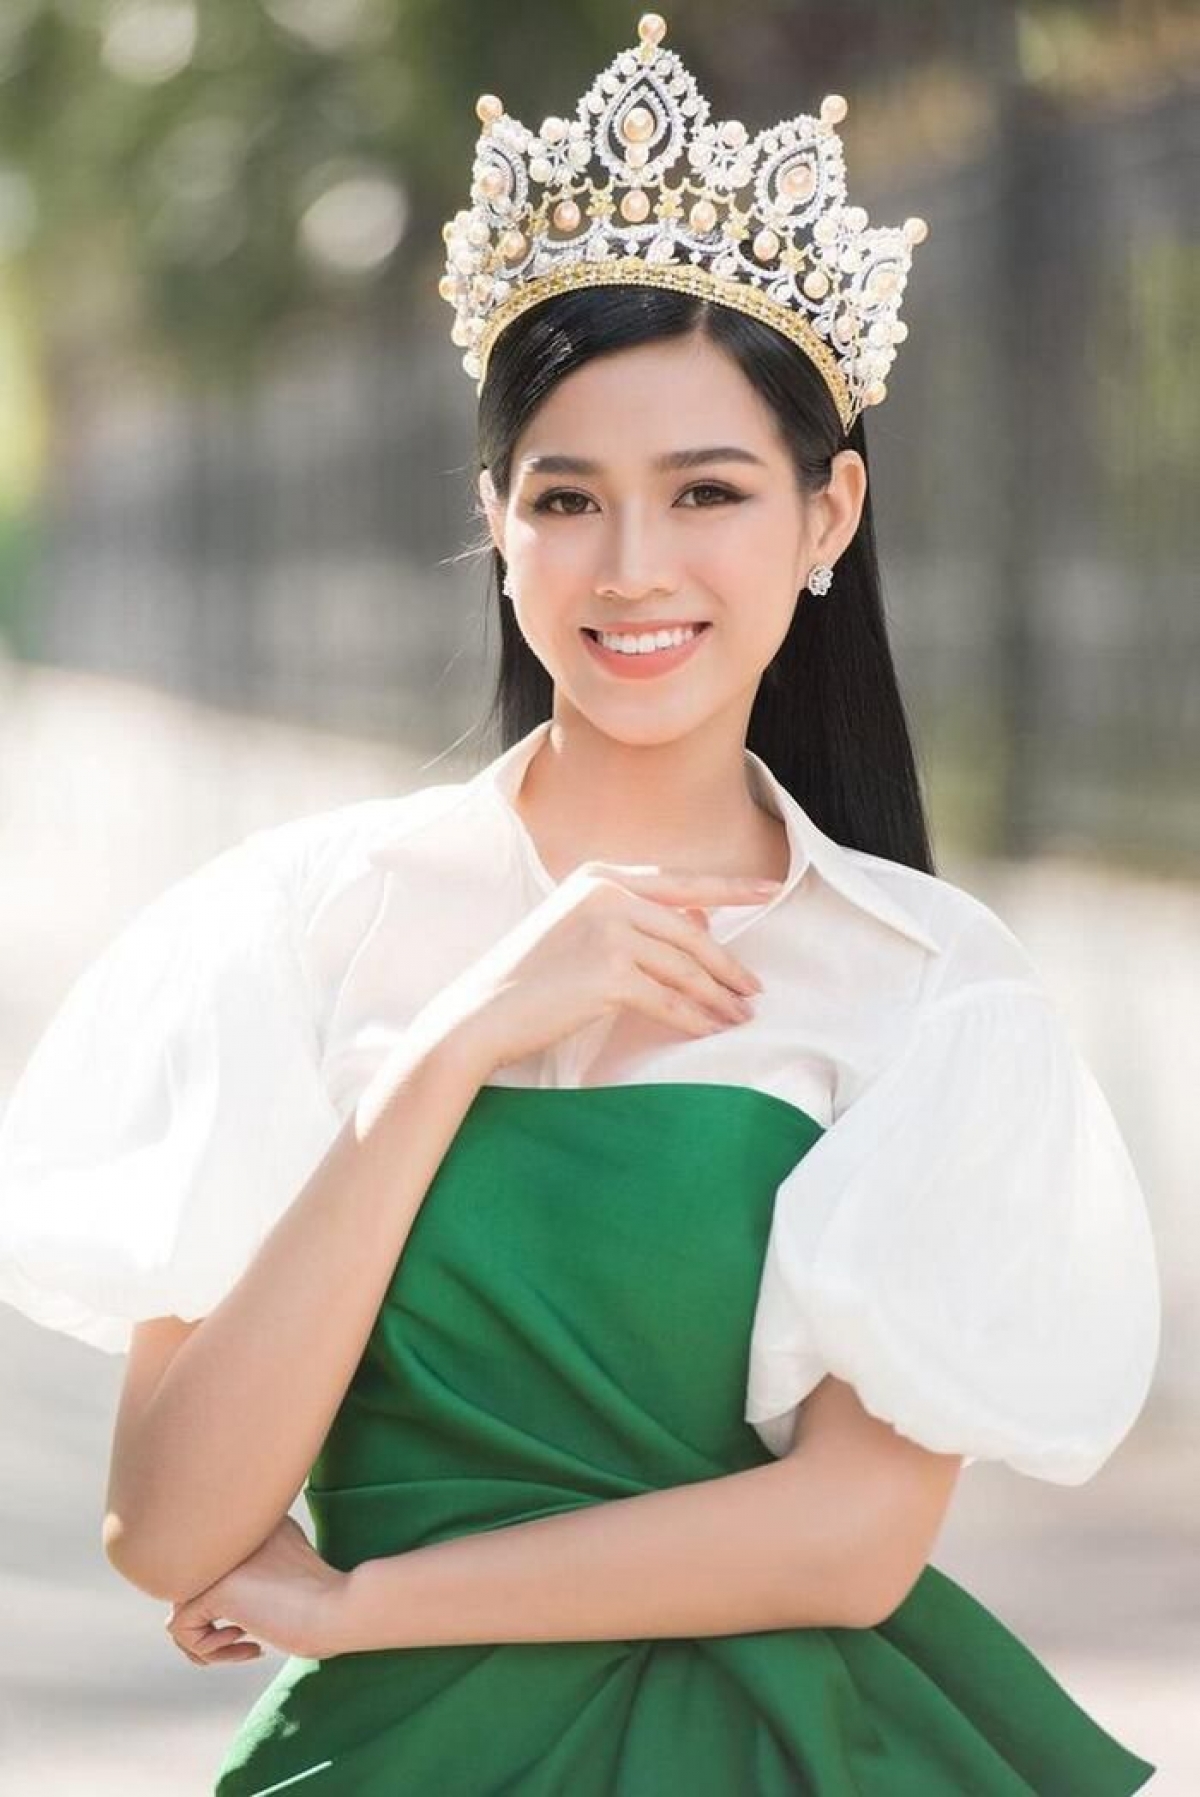 Hoa hậu Việt Nam 2020 luôn hoạt động tích cực trong các dự án thiện nguyện, đóng góp cho cộng đồng kể từ sau khi đăng quang